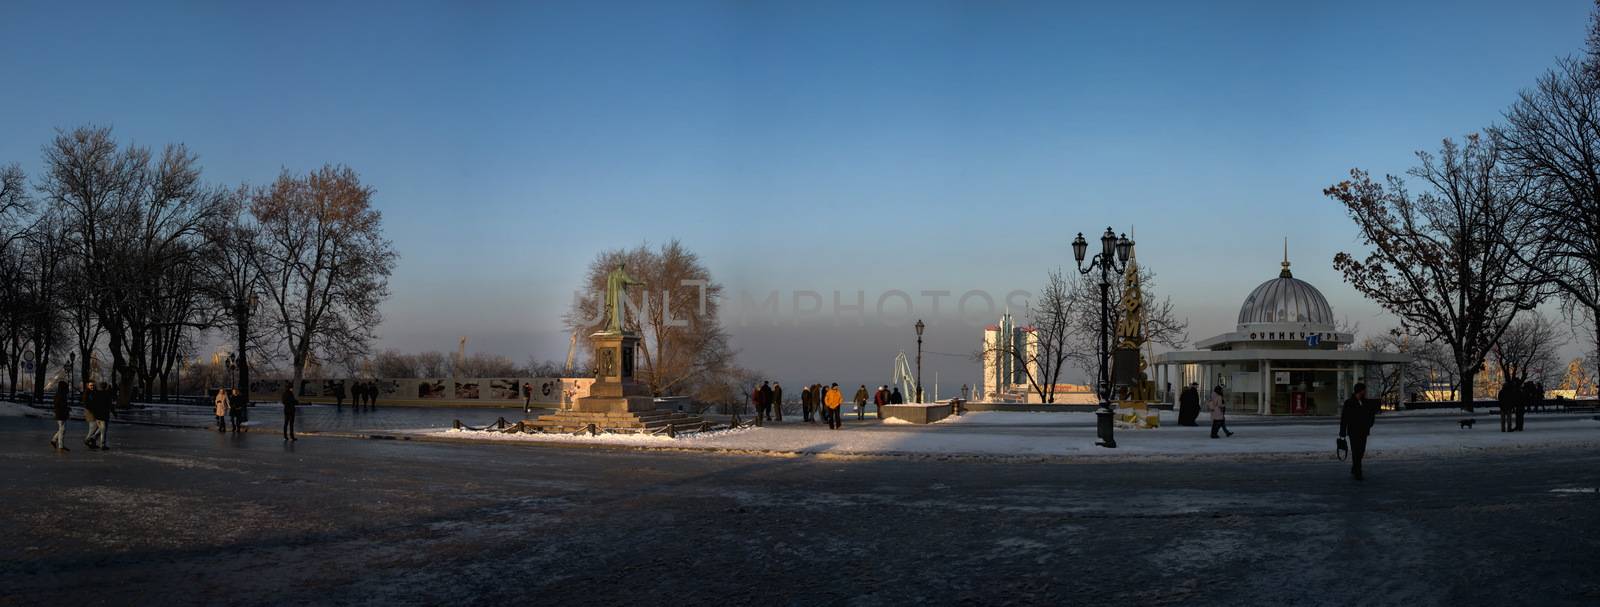 Winter Day in Odessa, Ukraine by Multipedia